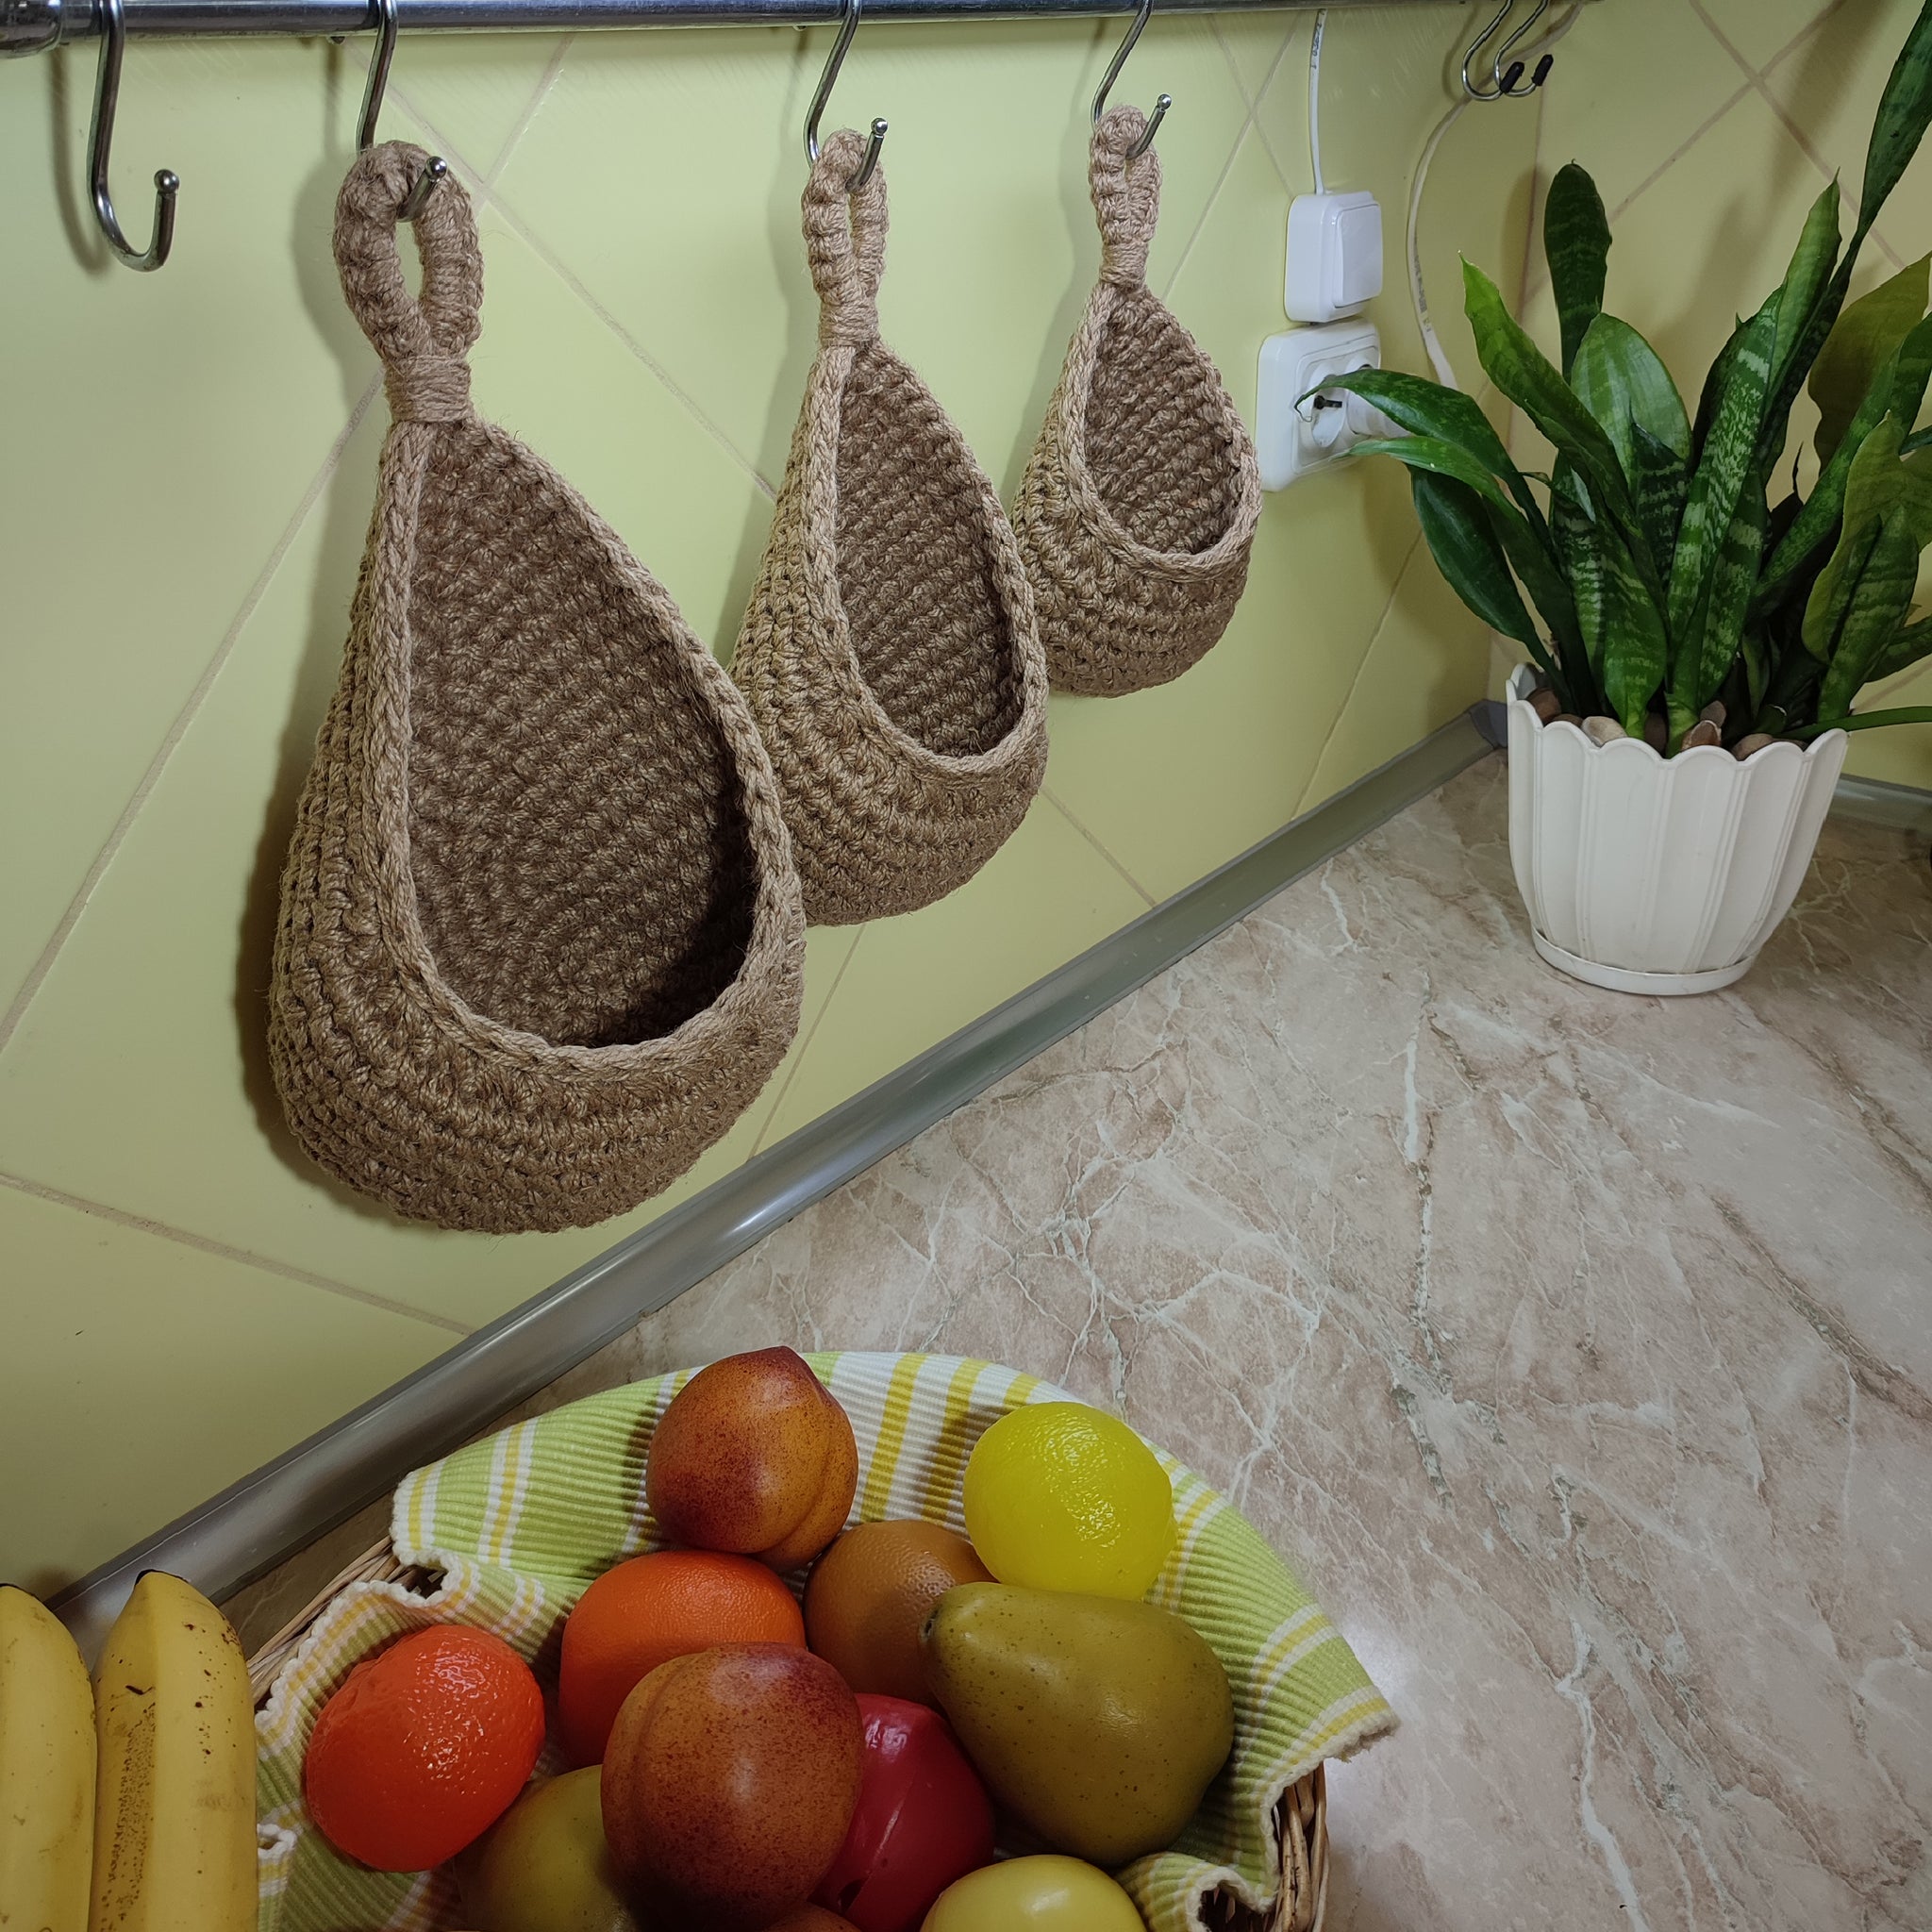 Hanging Wall Baskets, Vegetable Baskets, Jute Hanging Fruit Baskets, Rustic  Baskets Set, Storage Baskets, Jute Kitchen Baskets 